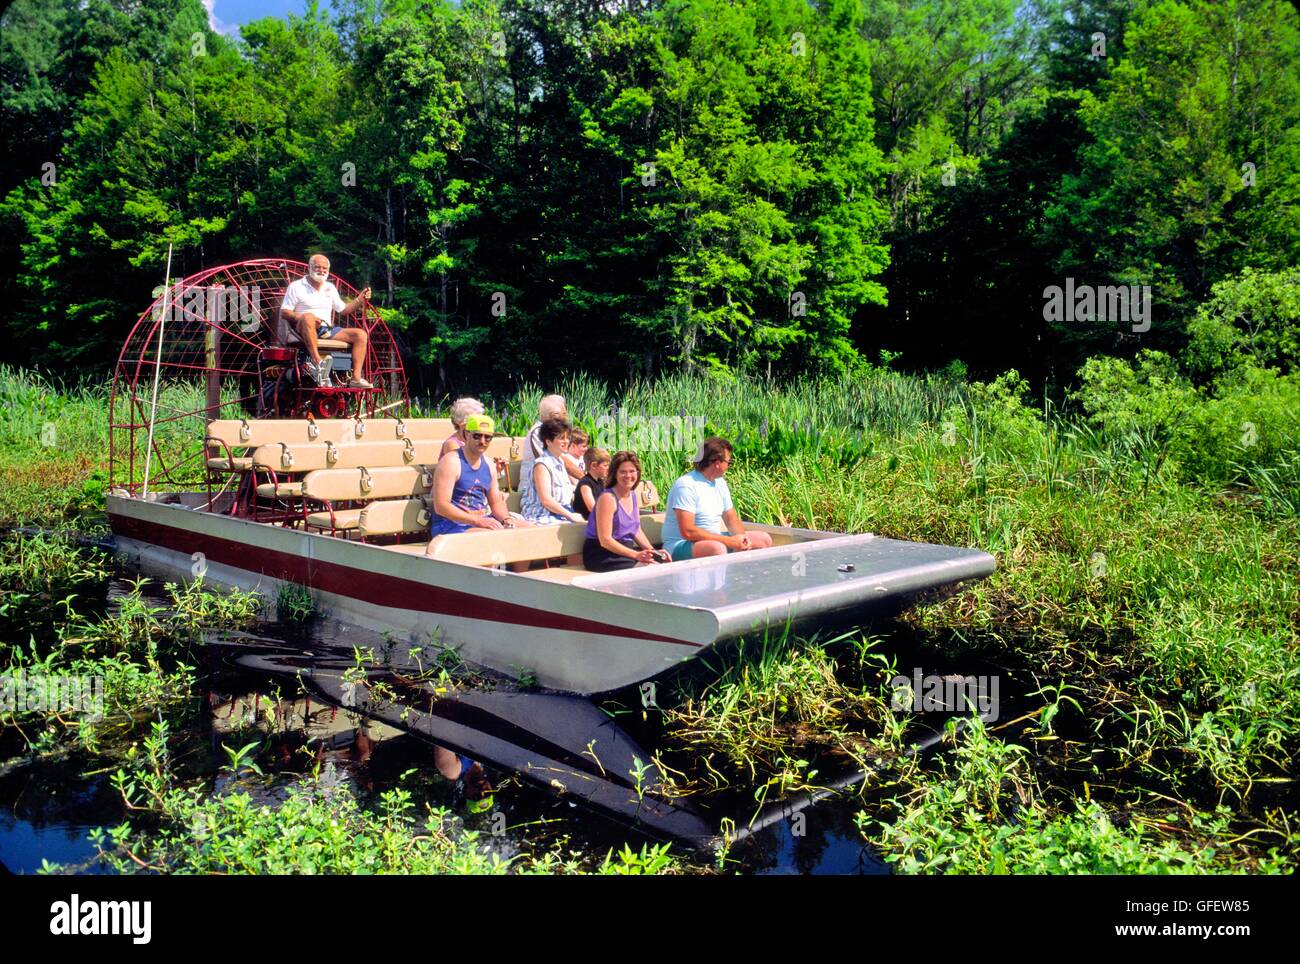 Wild Bill's air en bateau, prendre les visiteurs à travers le marais d'alligator à l'est de la rivière Withlacoochee homosassa, Florida, USA Banque D'Images